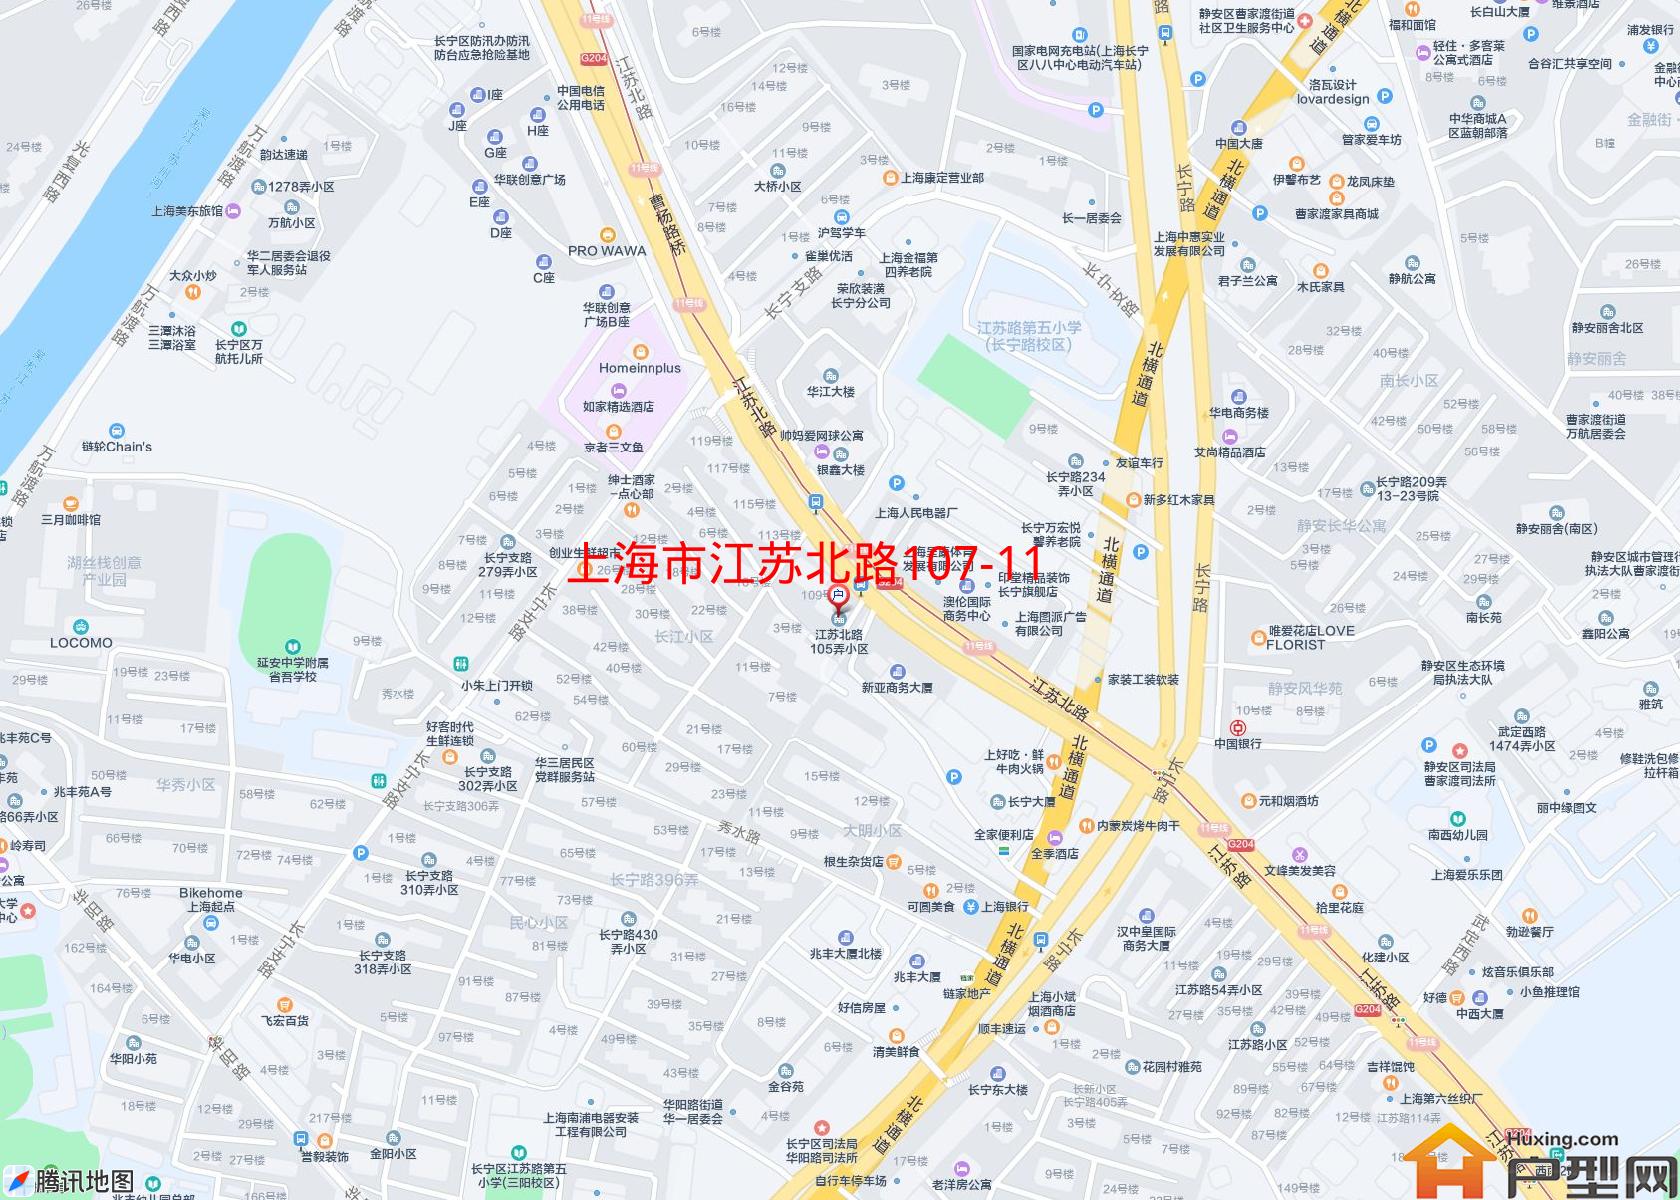 江苏北路107-119号(单)小区小区 - 户型网